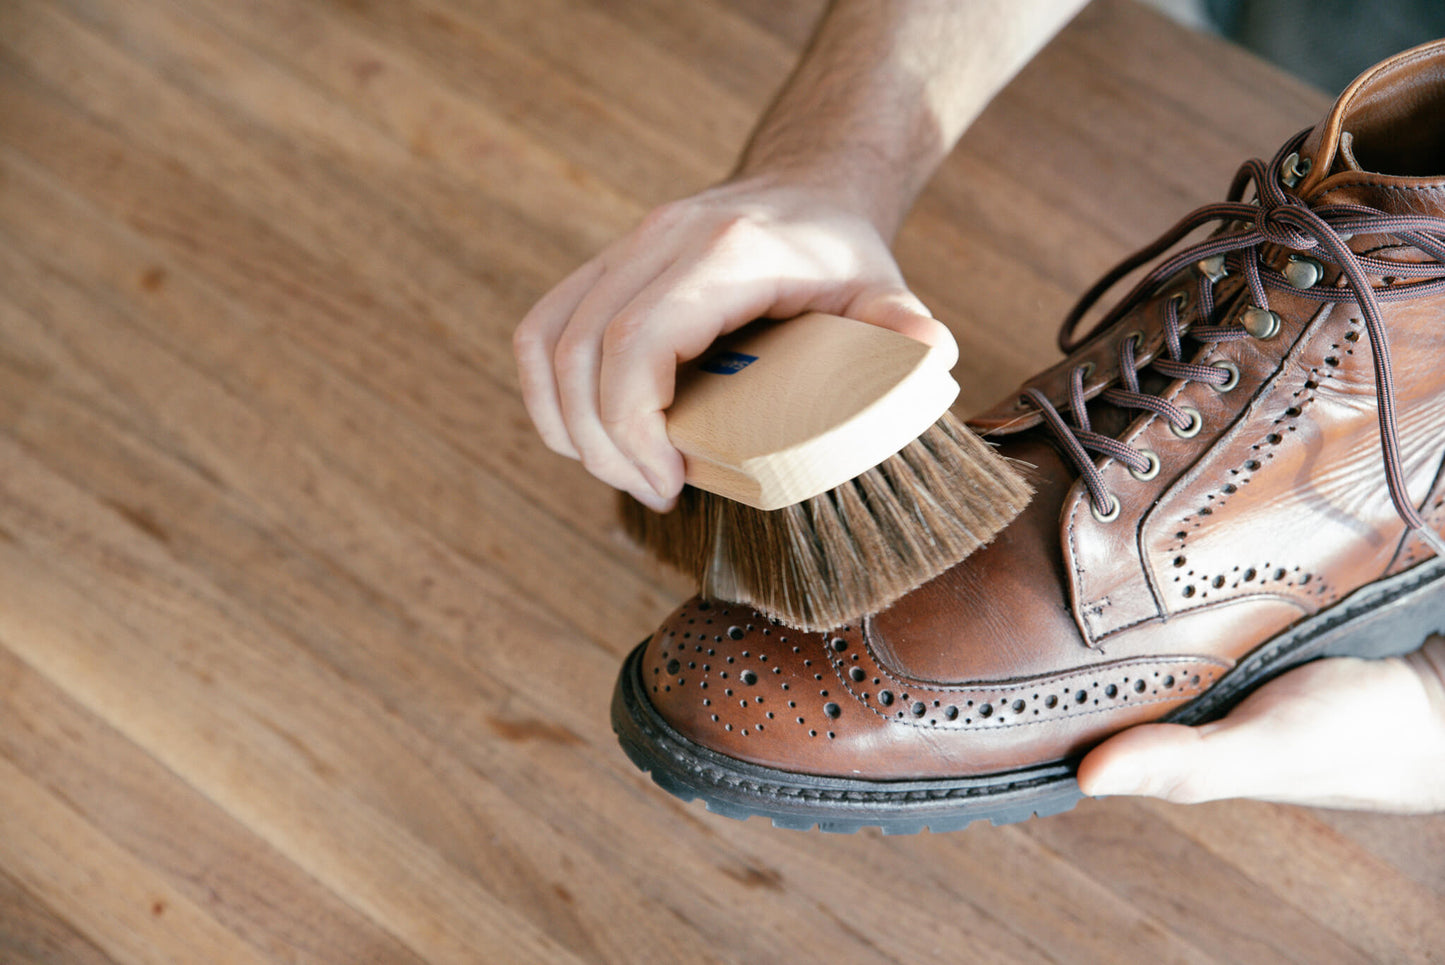 Shoe Shining 101 – The Basics